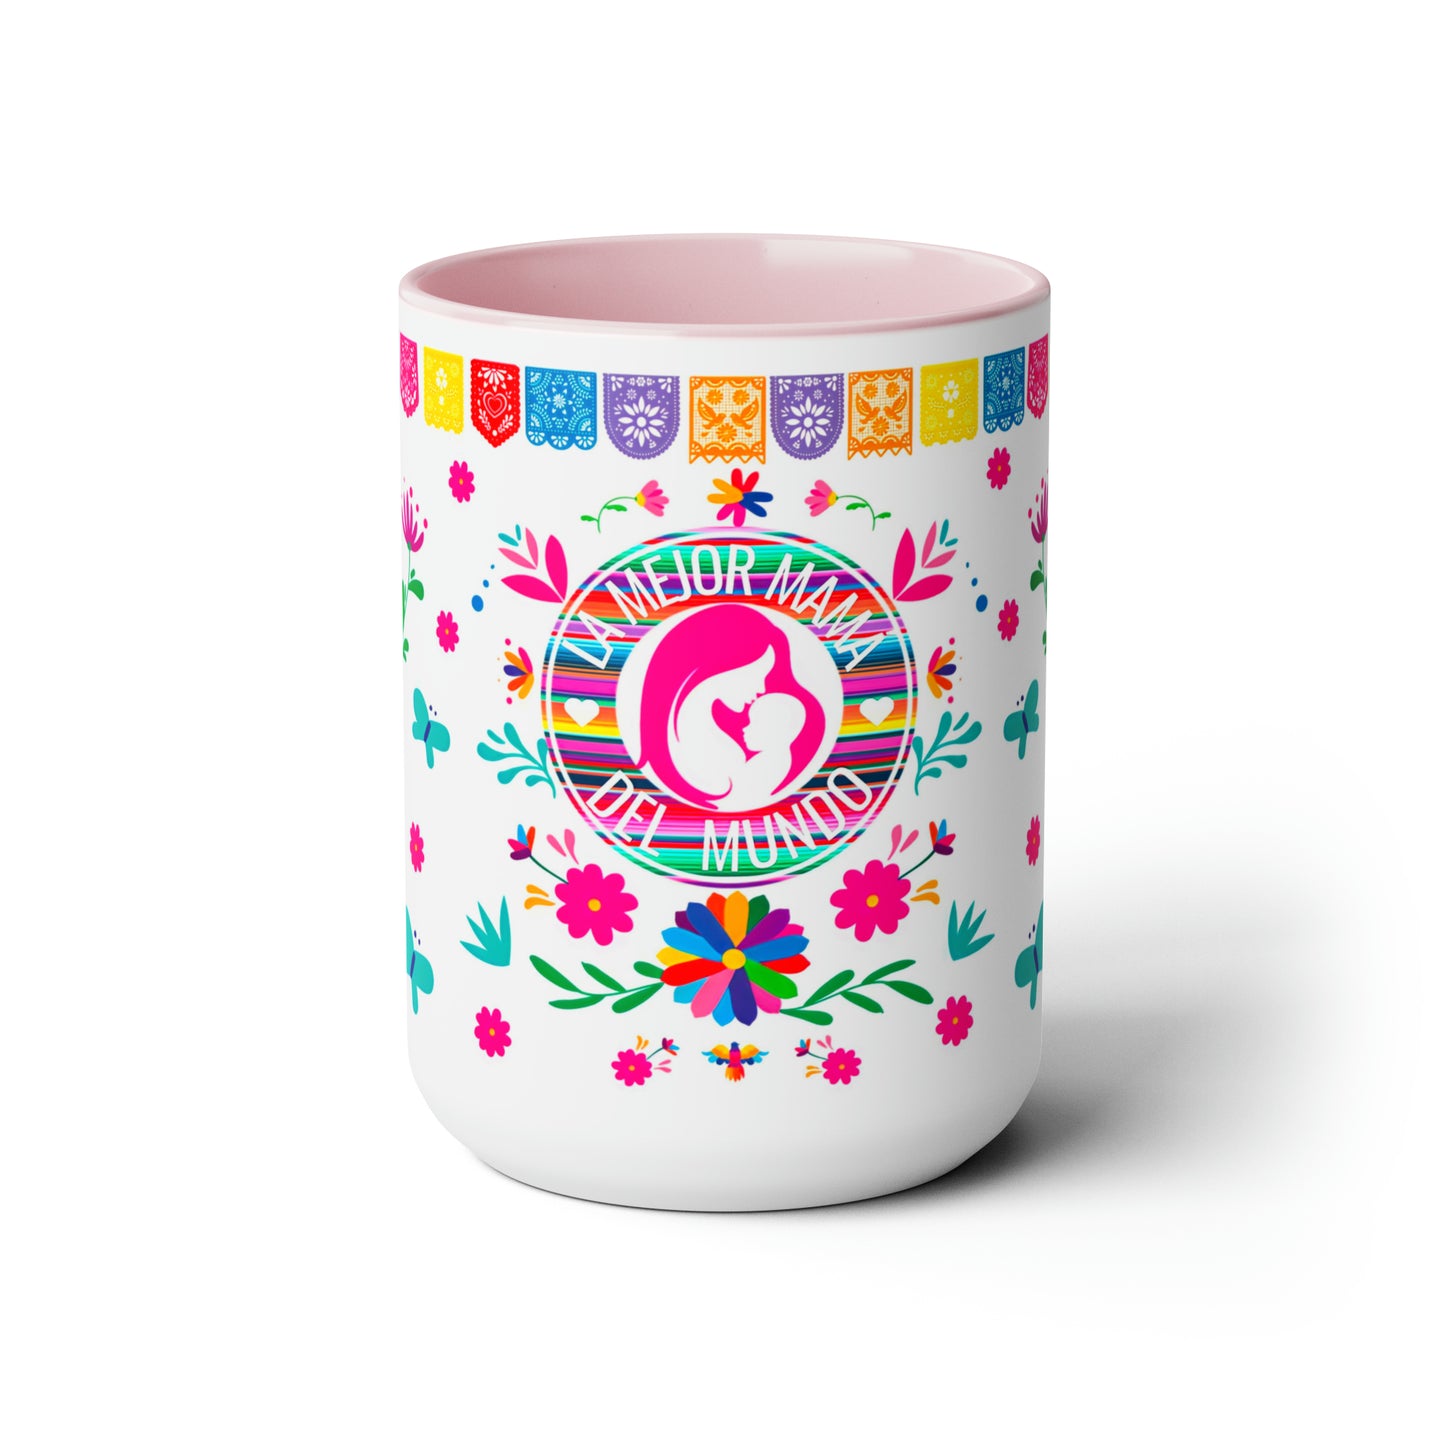 La mejor mamá del mundo Coffee Mugs, 15oz for Mexican mom or Mother’s Day. Día de las madres gift.